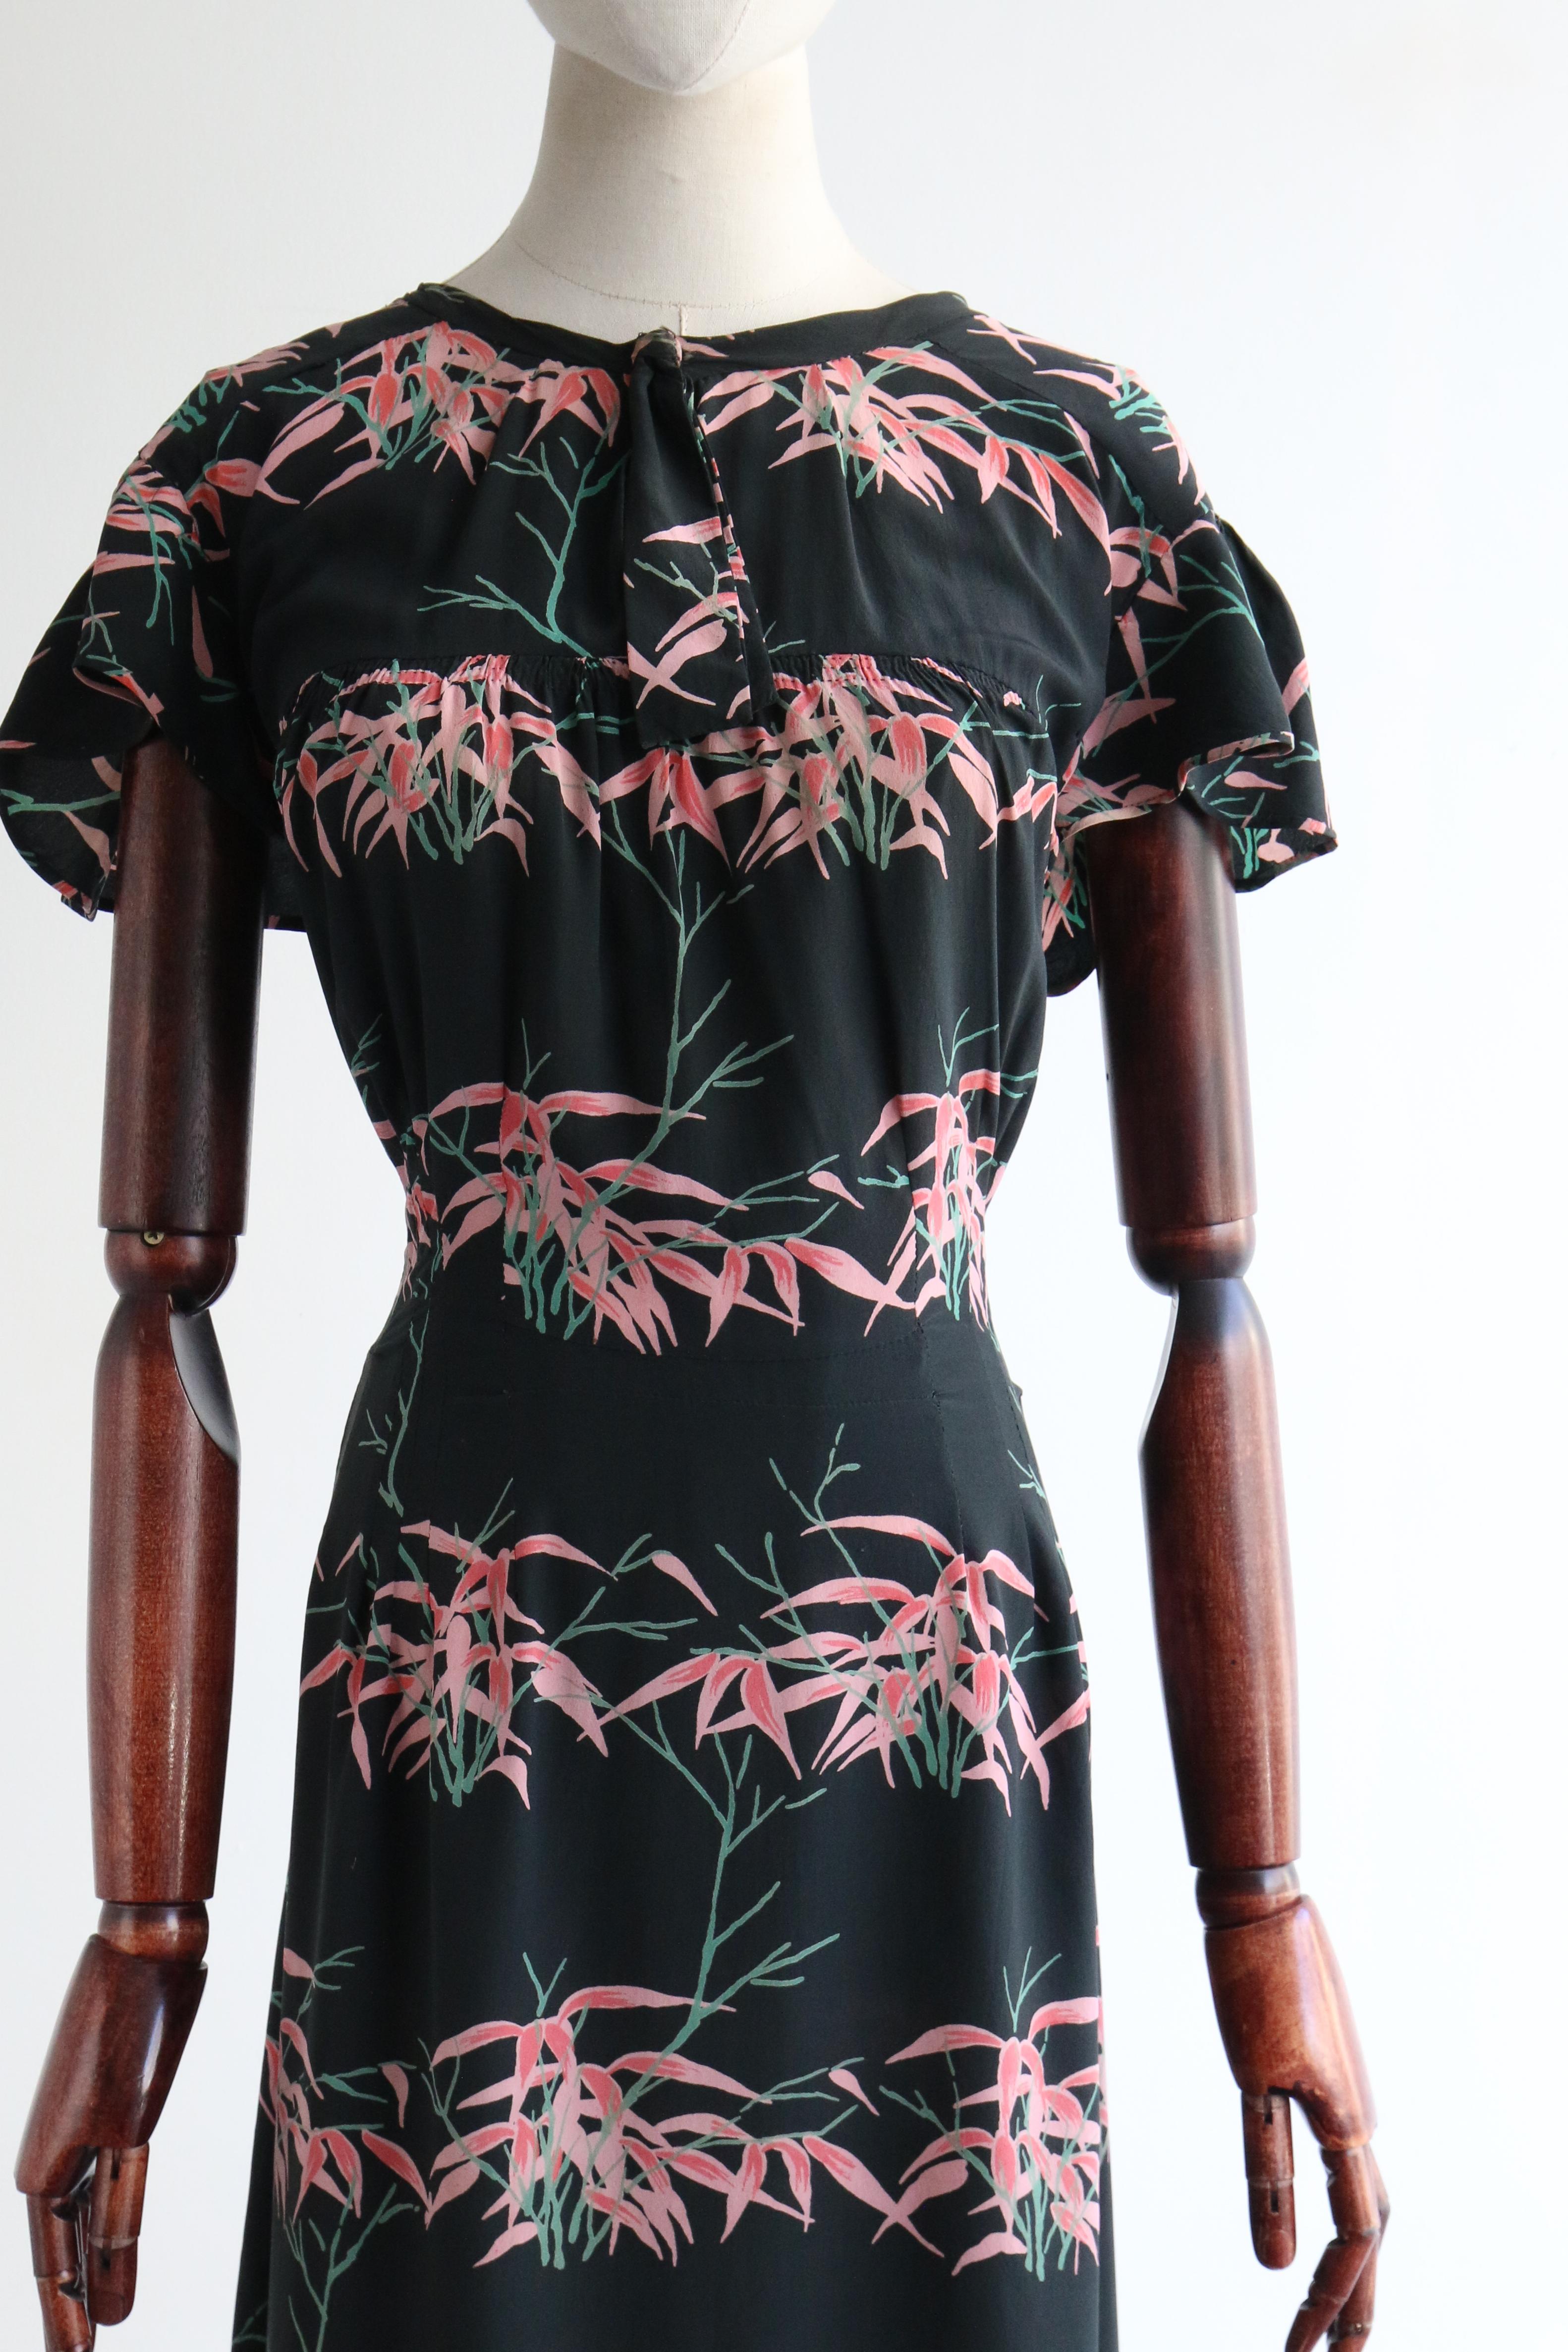 Women's or Men's Vintage 1940's Silk Pink Floral Dress & Jacket UK 14 US 10